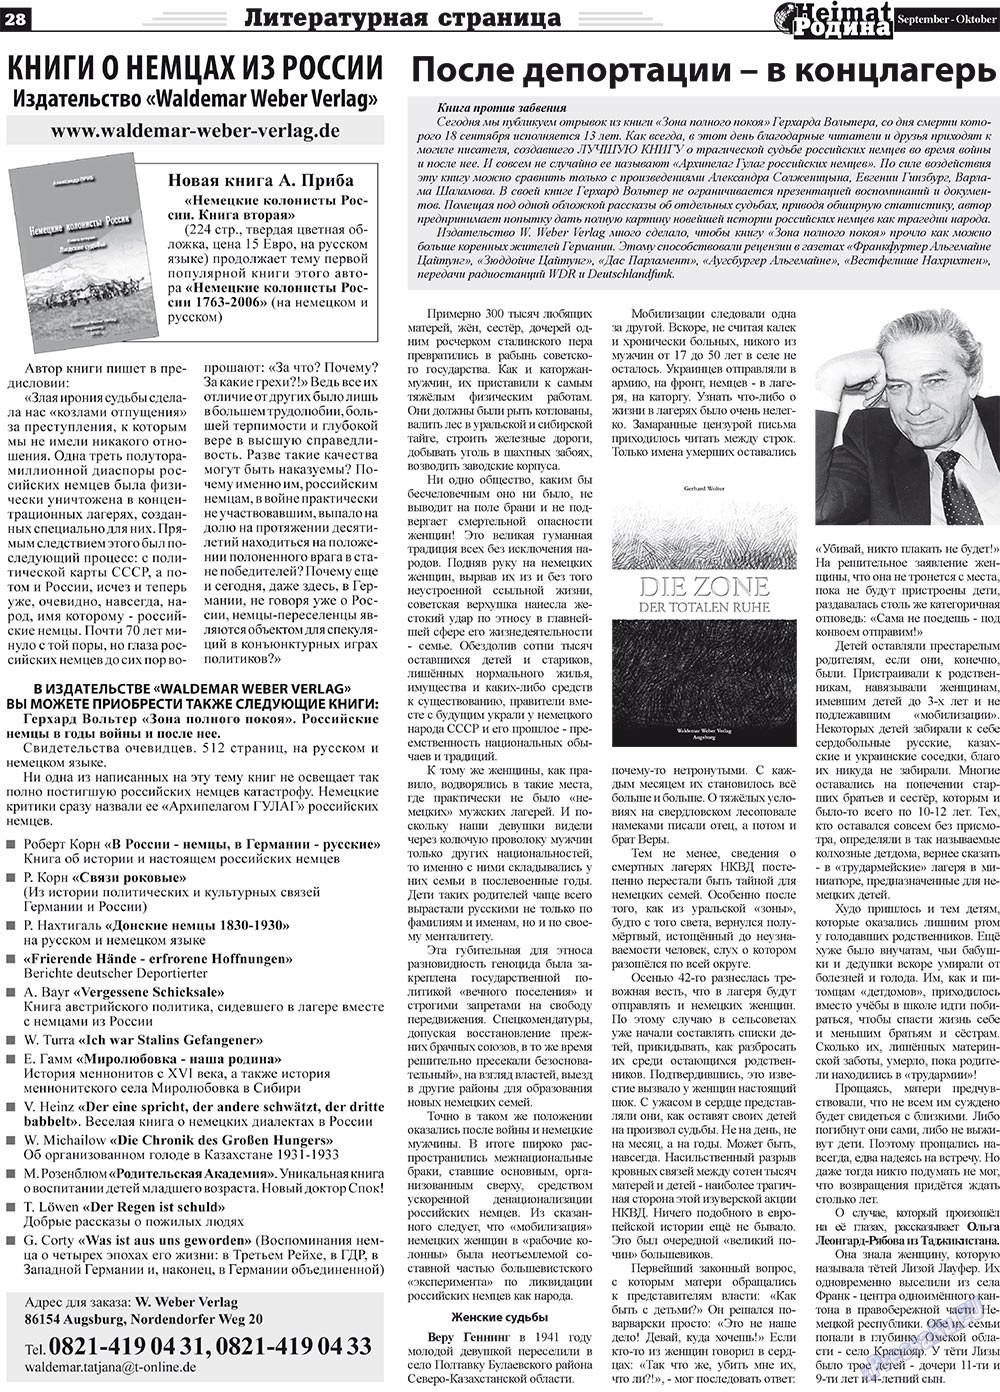 Heimat-Родина (газета). 2011 год, номер 9, стр. 28